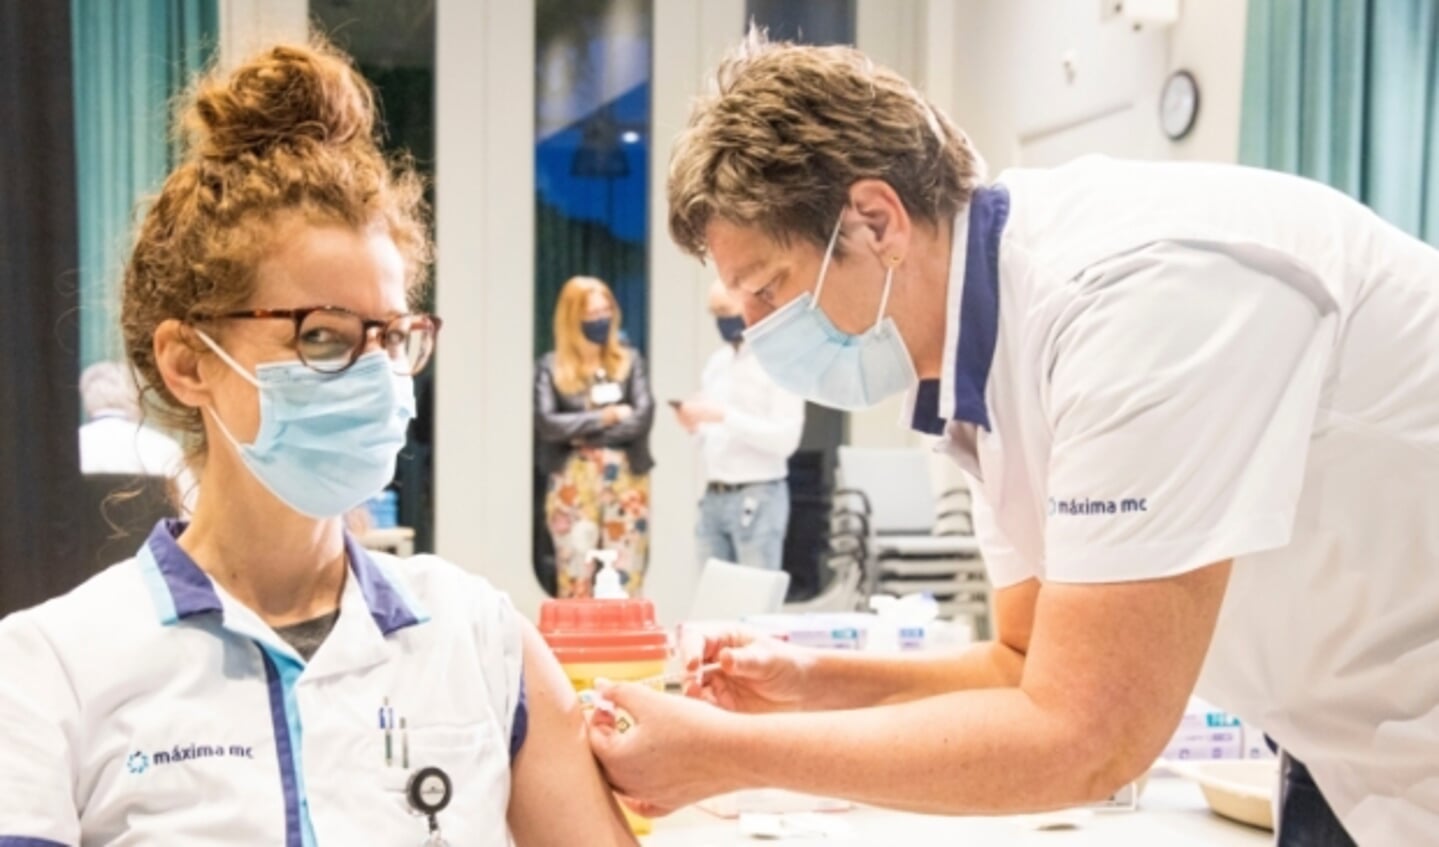 Nathalie Borneman, Intensive Care verpleegkundige krijgt eerste vaccinatie in MMC. FOTO: MMC